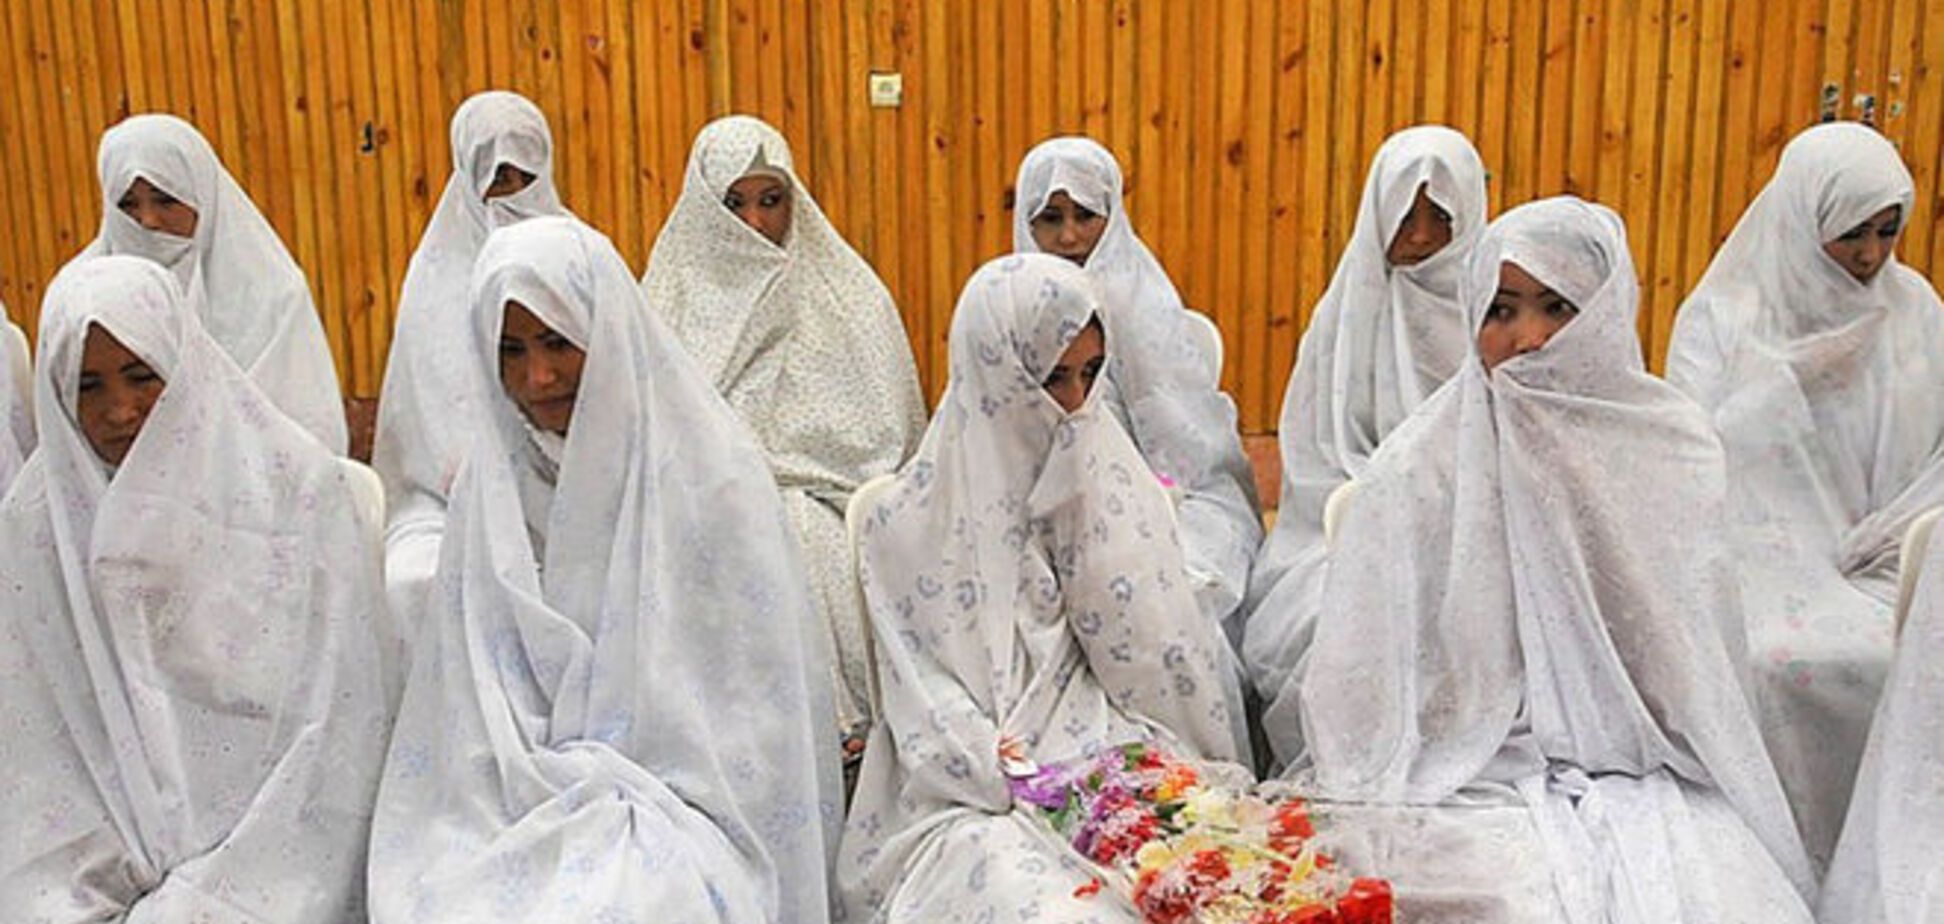 Свадьба в Афганистане закончилась гибелью 20 человек